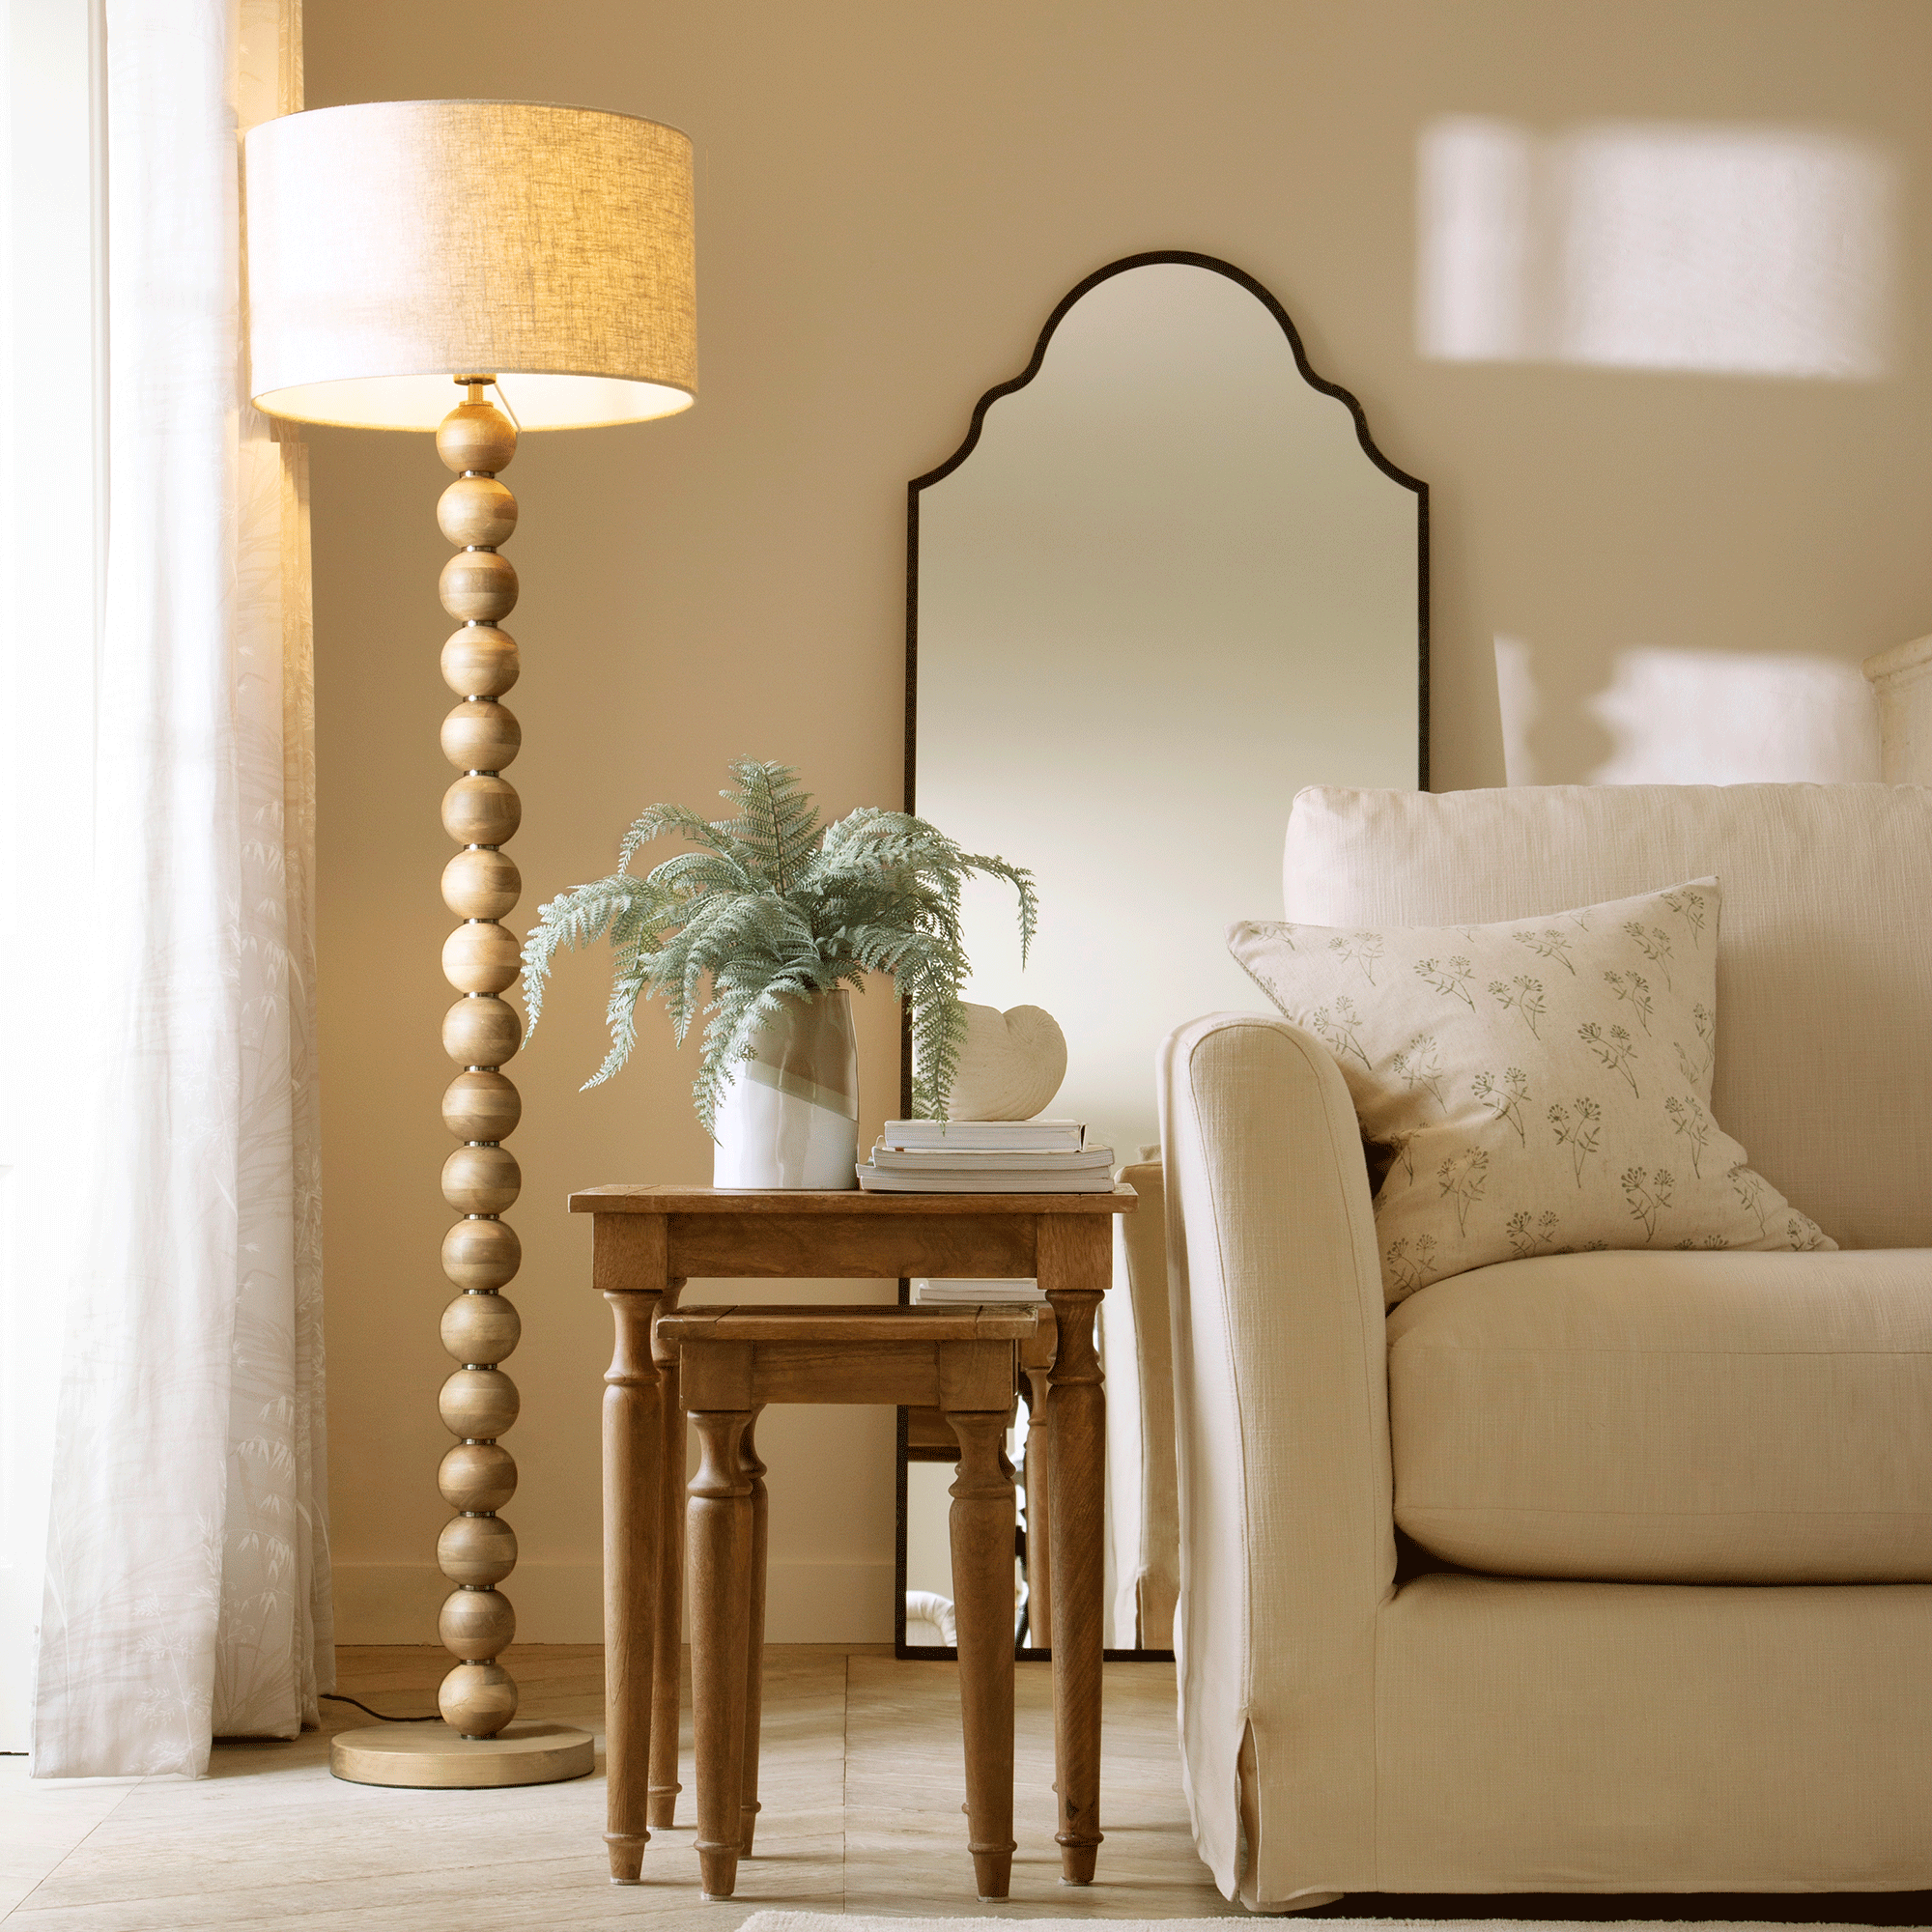 wooden floor lamp in a living room